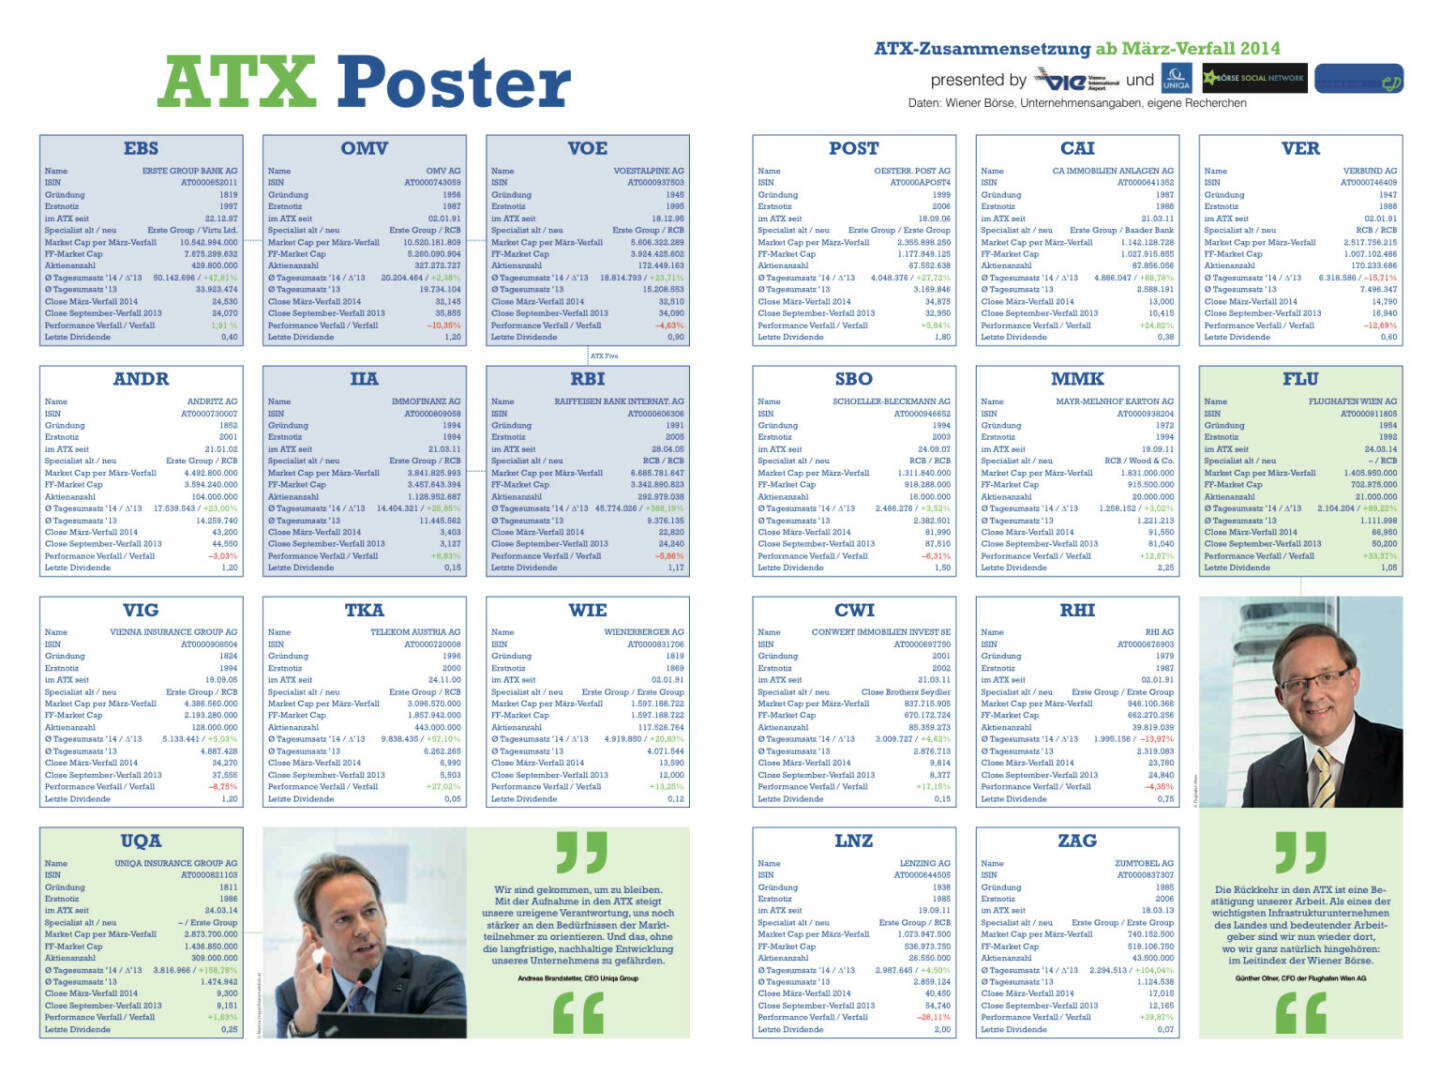 Unser ATX Poster mit allen aktuell gültigen Infos, downloadbar unter http://www.christian-drastil.com/fachheft-info/